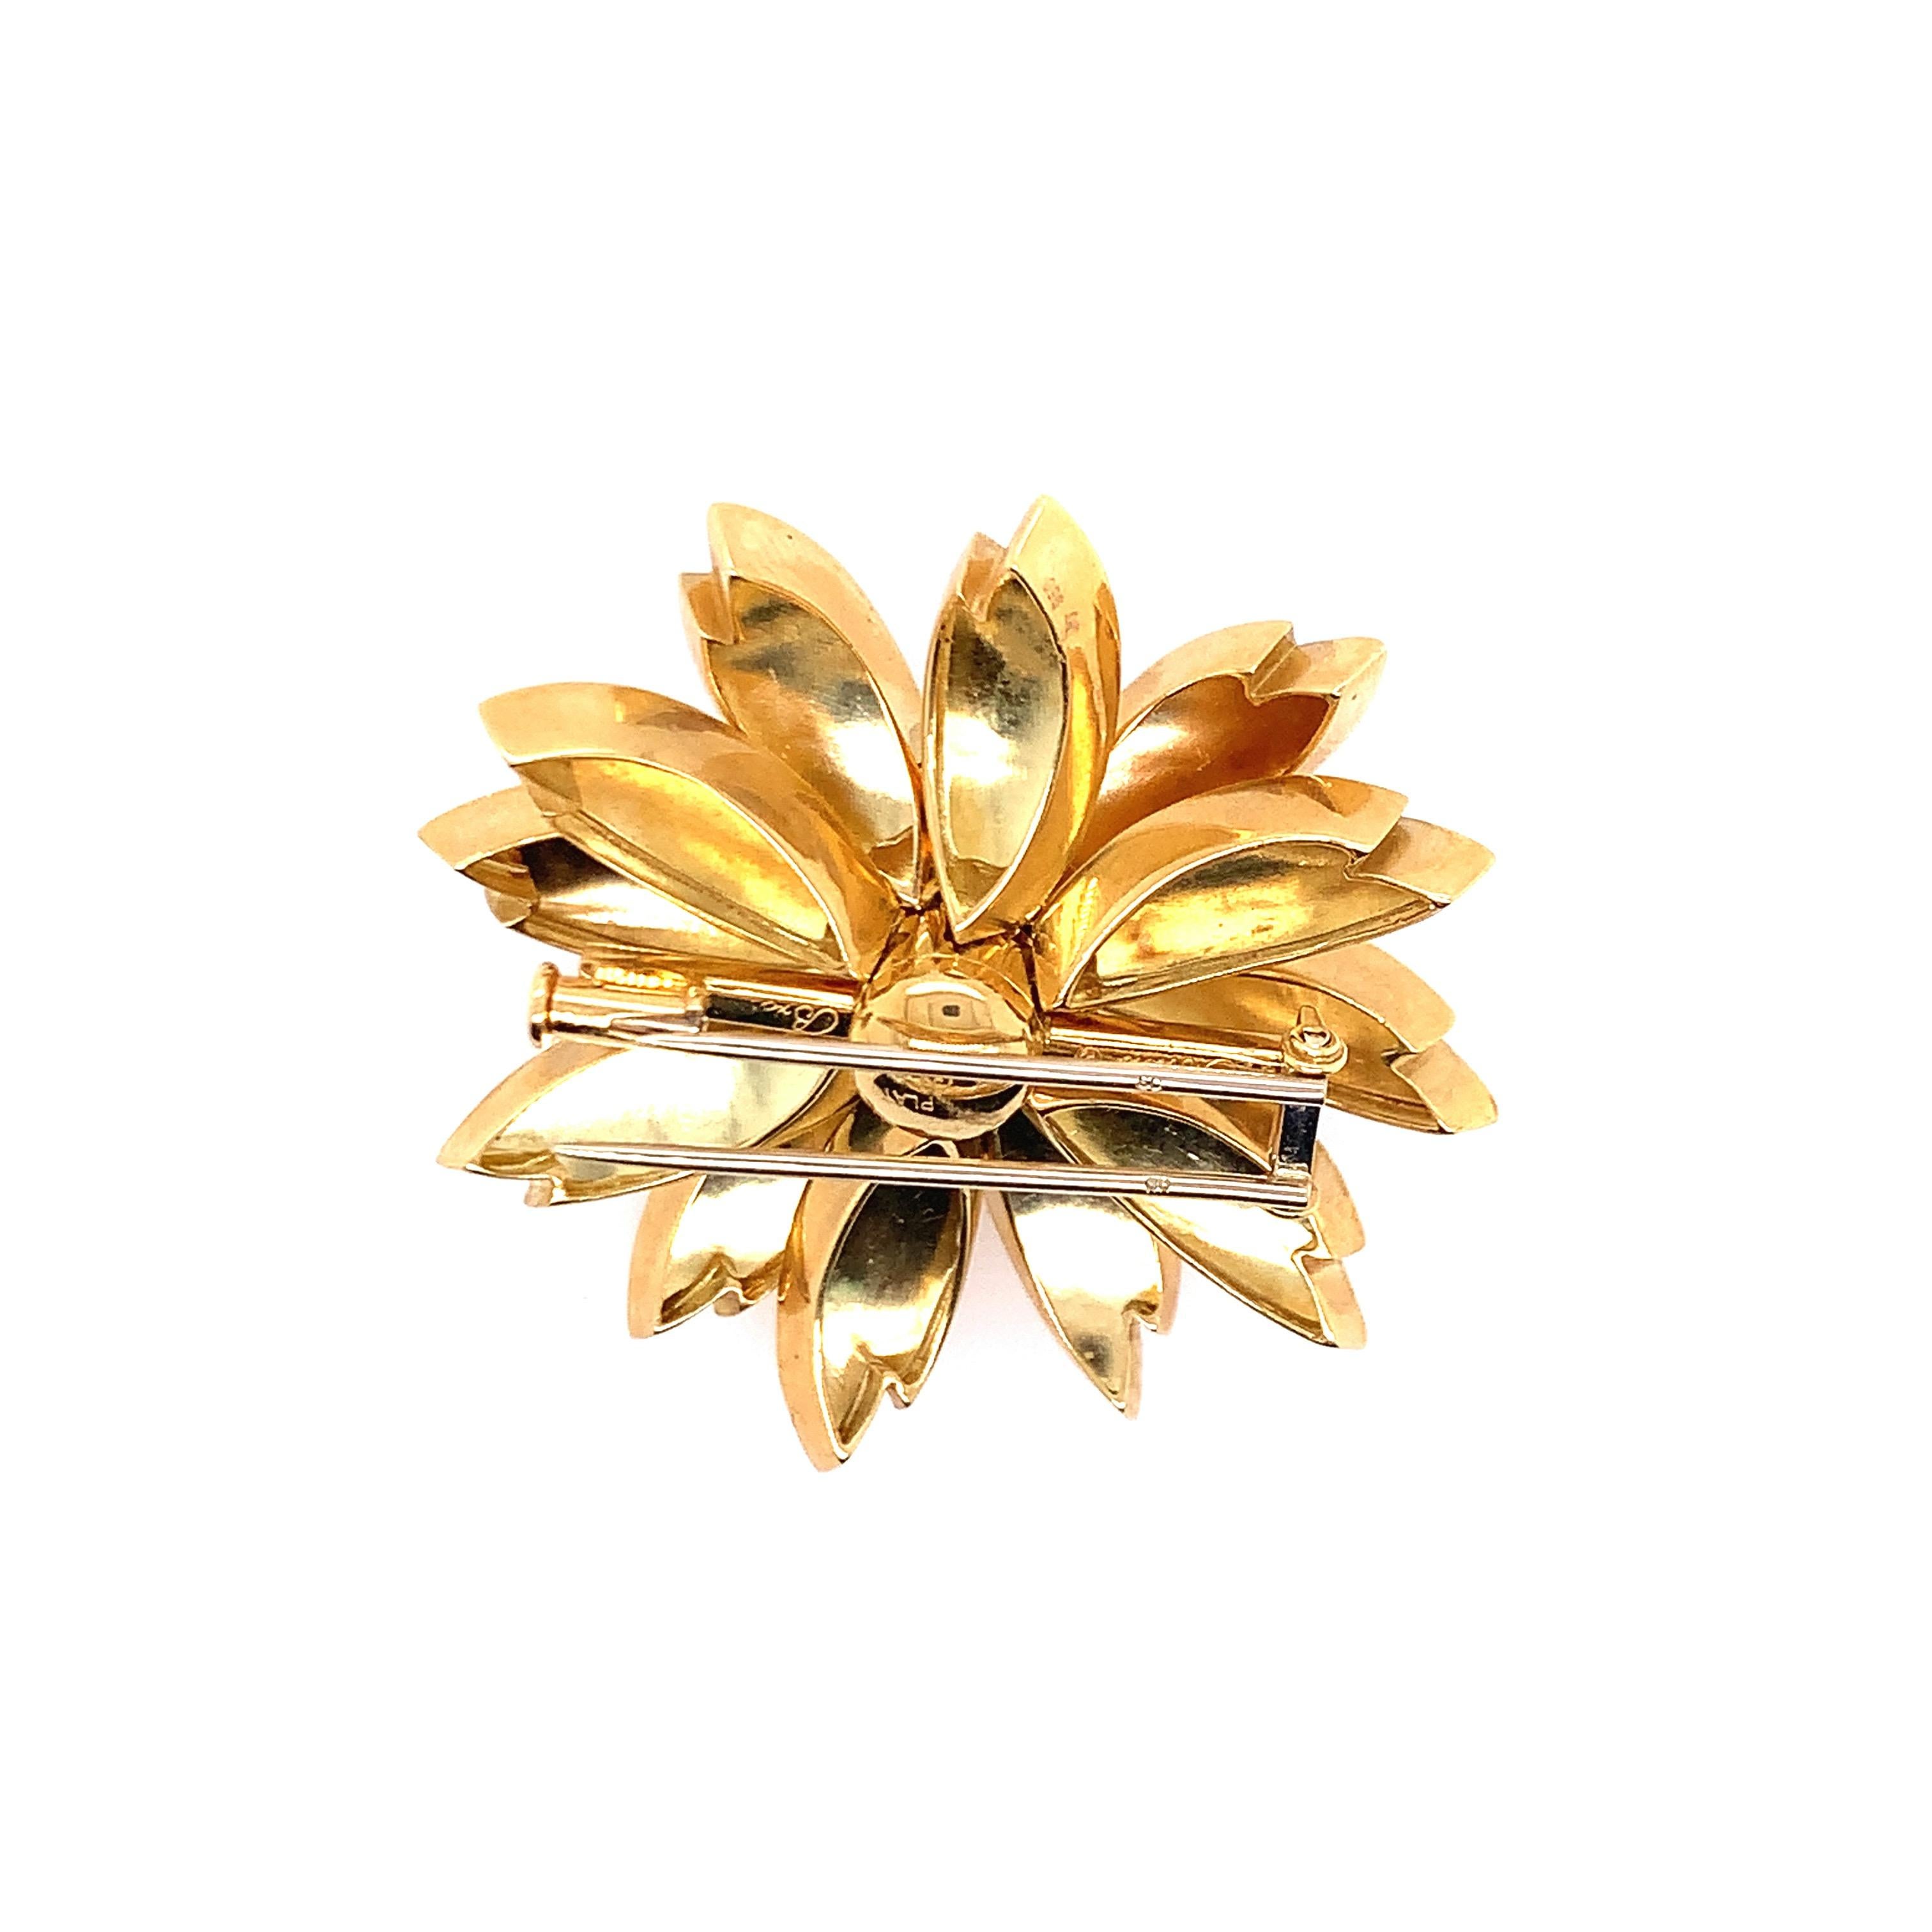 Diese florale Brosche der Gebrüder Aletto besteht aus Diamanten und Saphiren, die auf 18 Karat Gelbgold gefasst sind. Es sind 13 runde Saphire mit einem Gewicht von etwa  1,50 Karat und 6 runde Diamanten in Spannzangenfassung mit einem Gewicht von